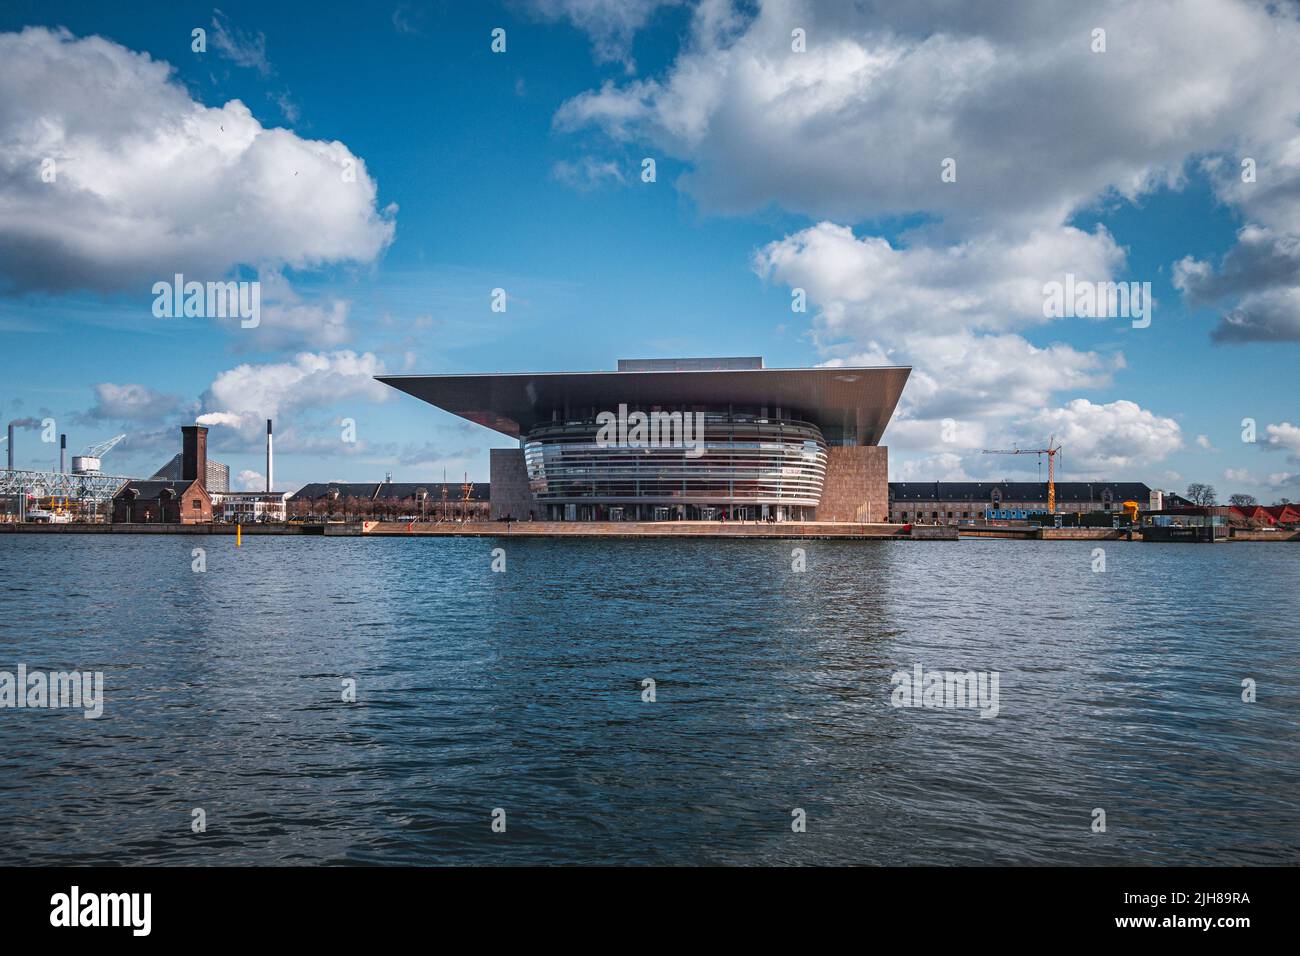 L'Opéra de Copenhague, Operaen, l'opéra national du Danemark à Holmen, Copenhague. C'est l'un des opéras les plus chers construit. Banque D'Images